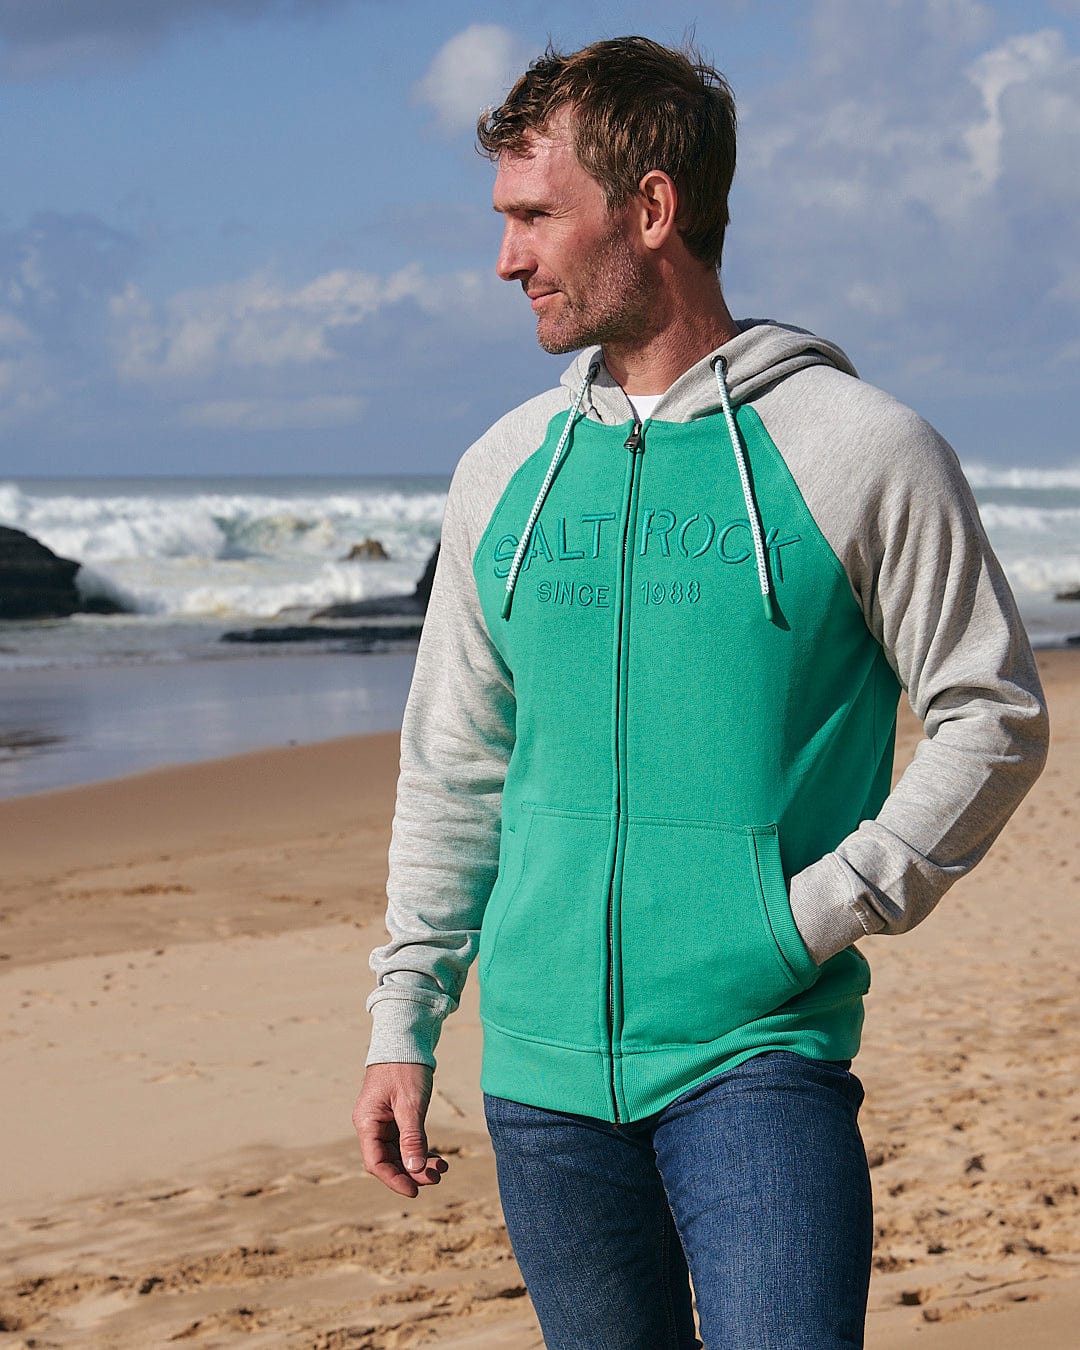 A man standing on a beach wearing a Saltrock Stencil - Mens Zip Hoodie - Green.